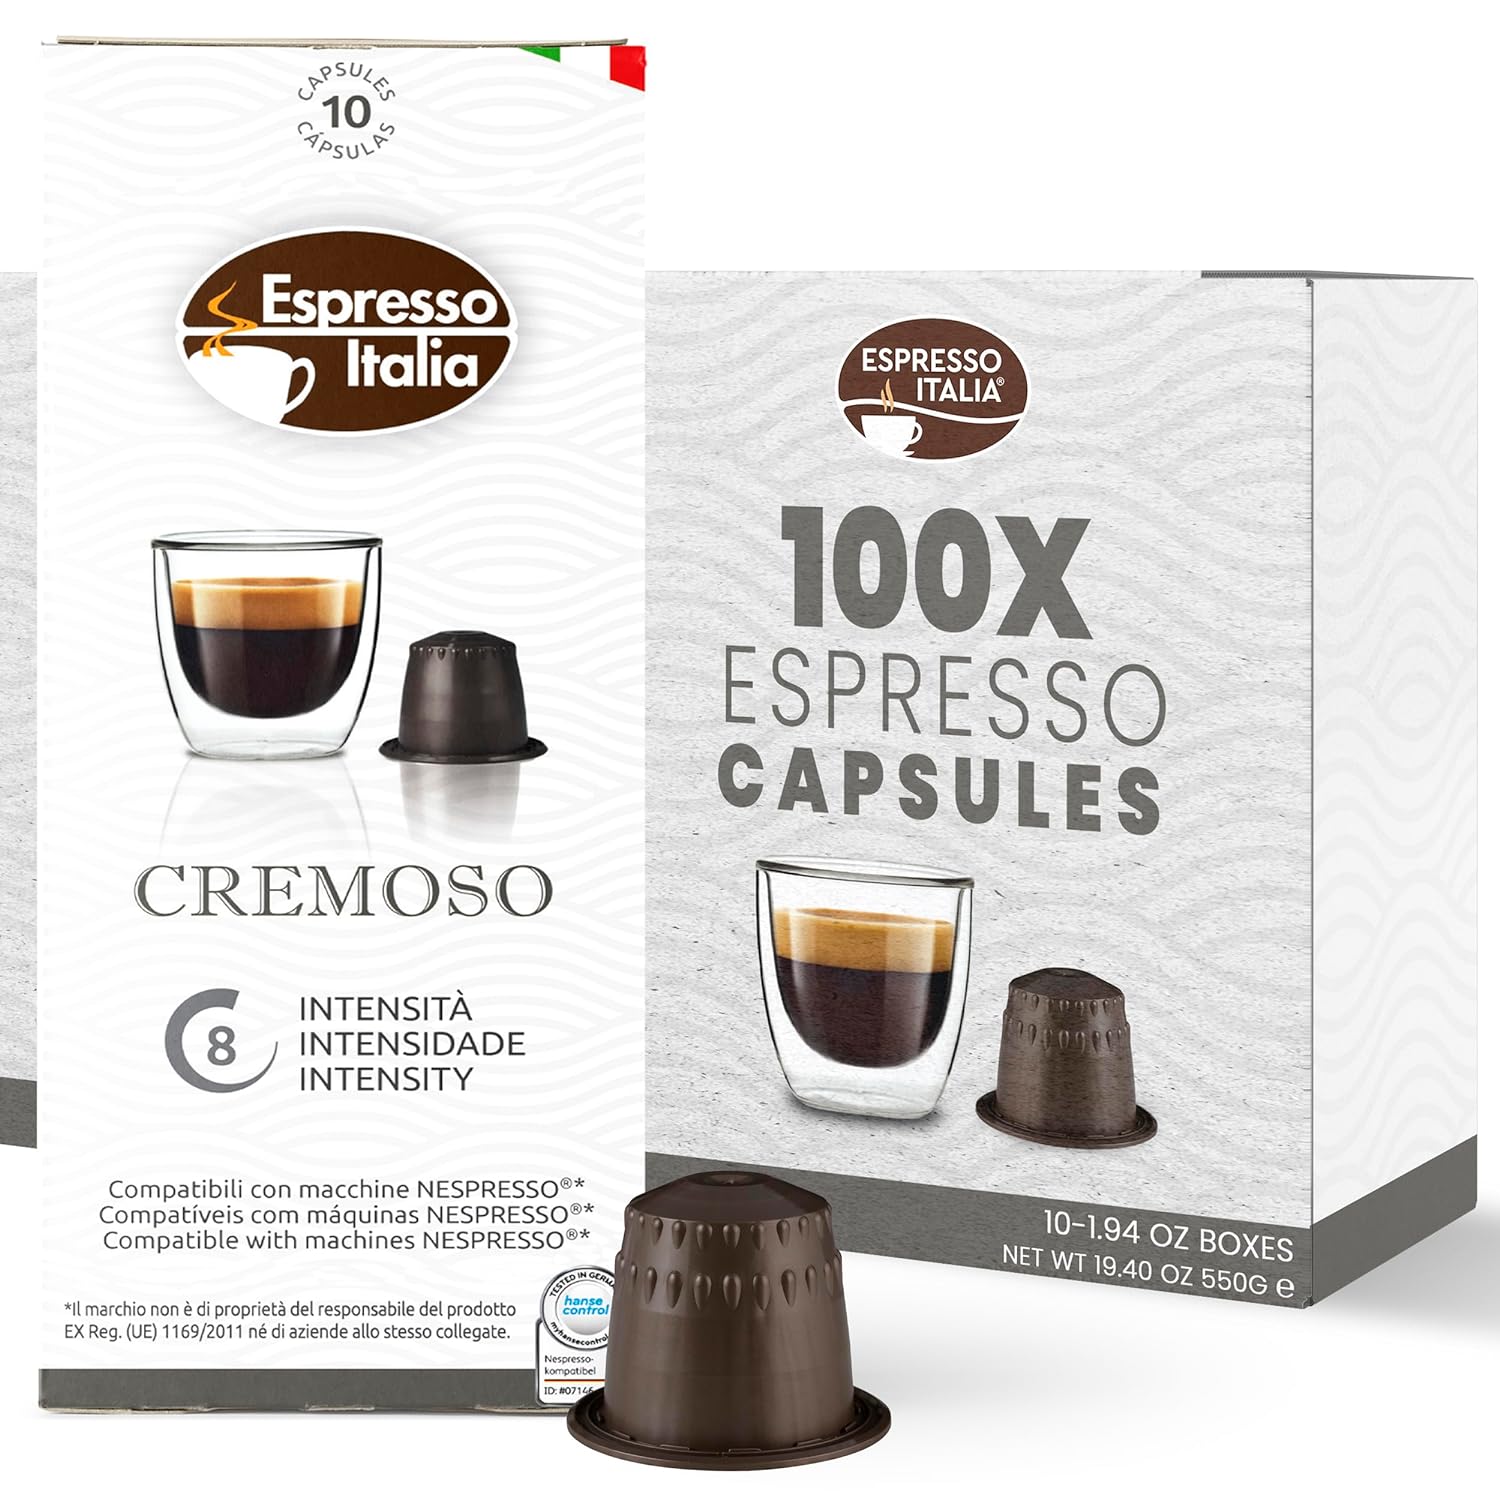 ESPRESSO ITALIA Capsules Compatible with Nespresso Machines, 100 Count - CREMOSO, Italian Coffee Pods Expresso Intensity 8